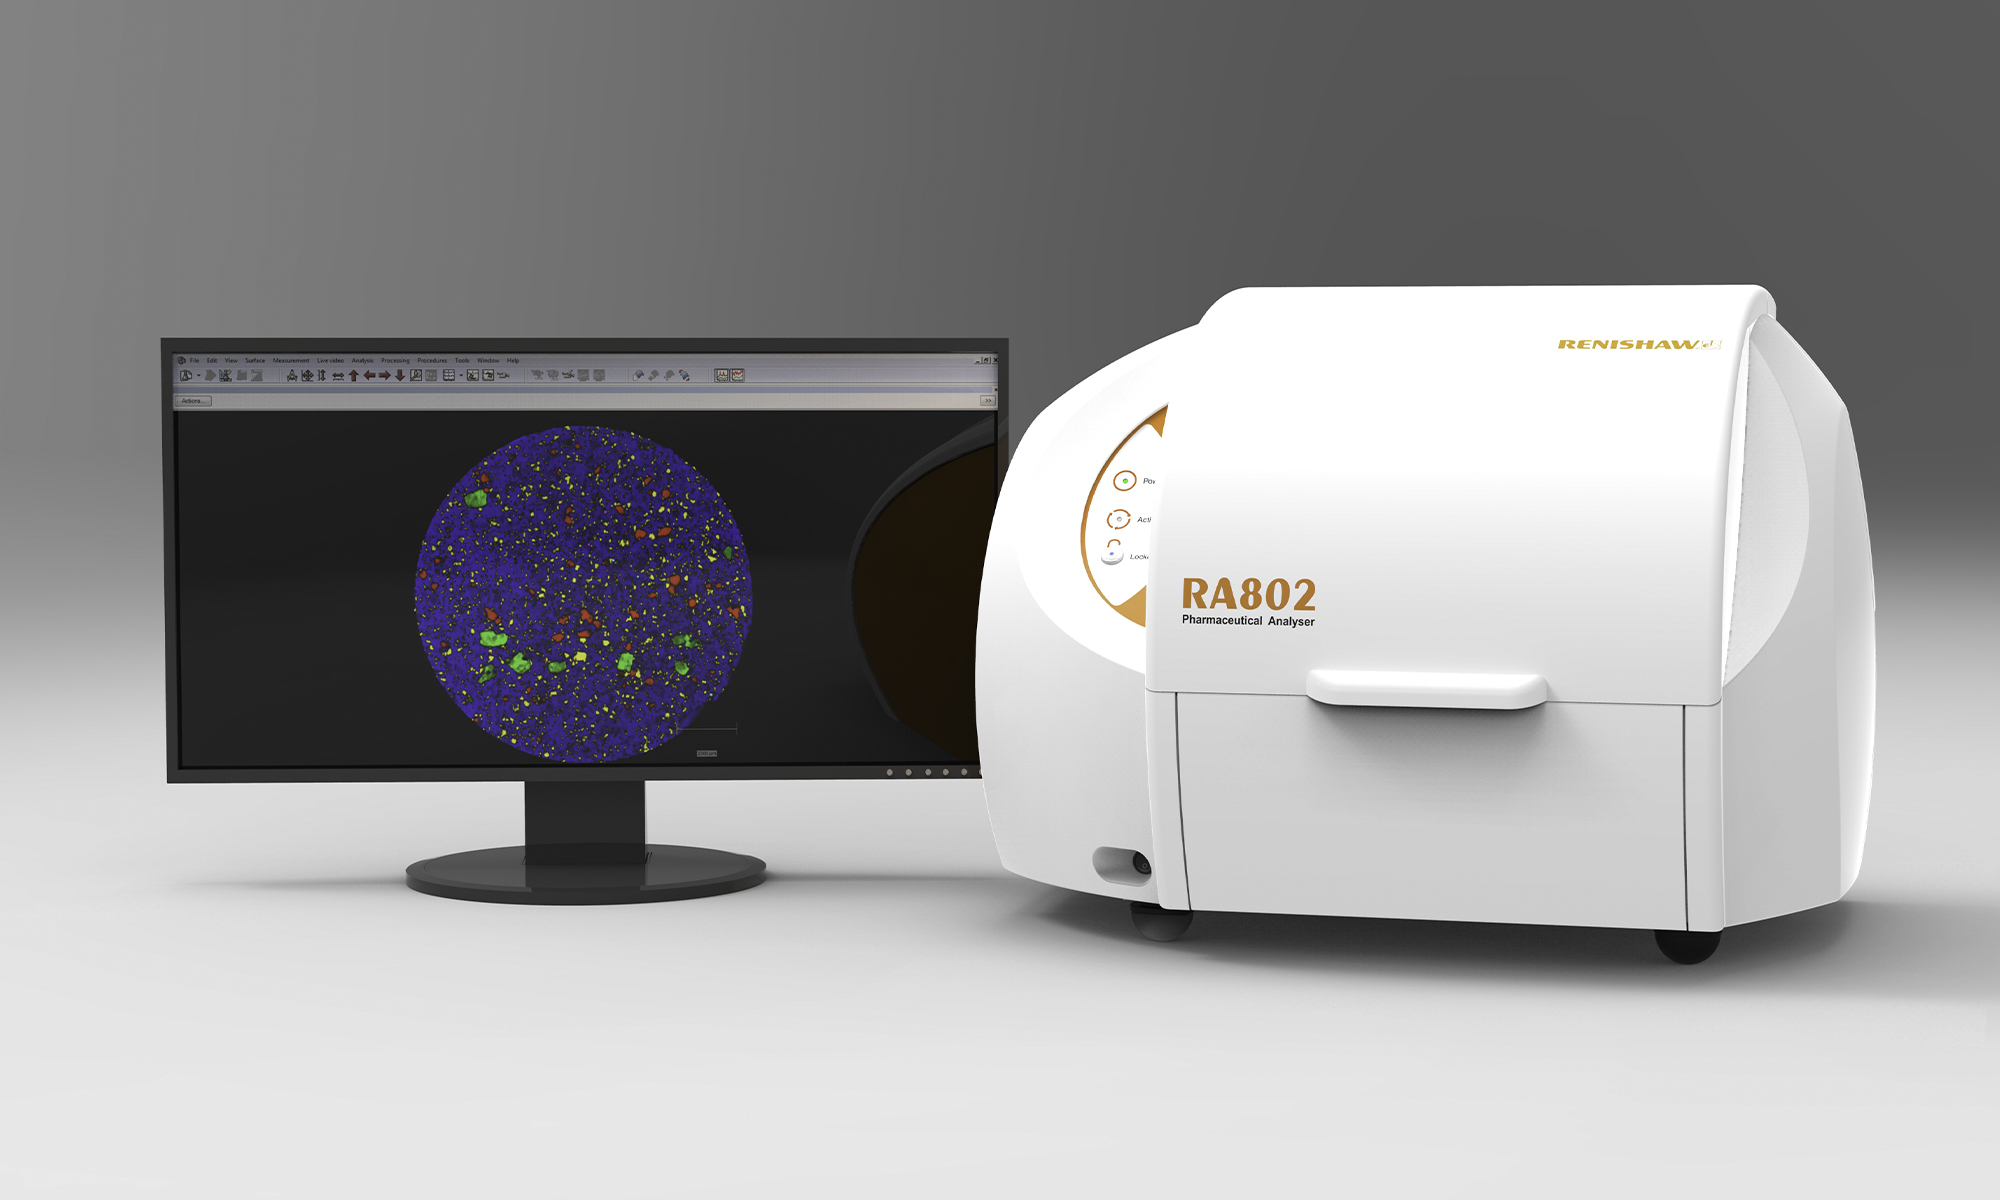 RA802药物分析仪与计算机屏幕